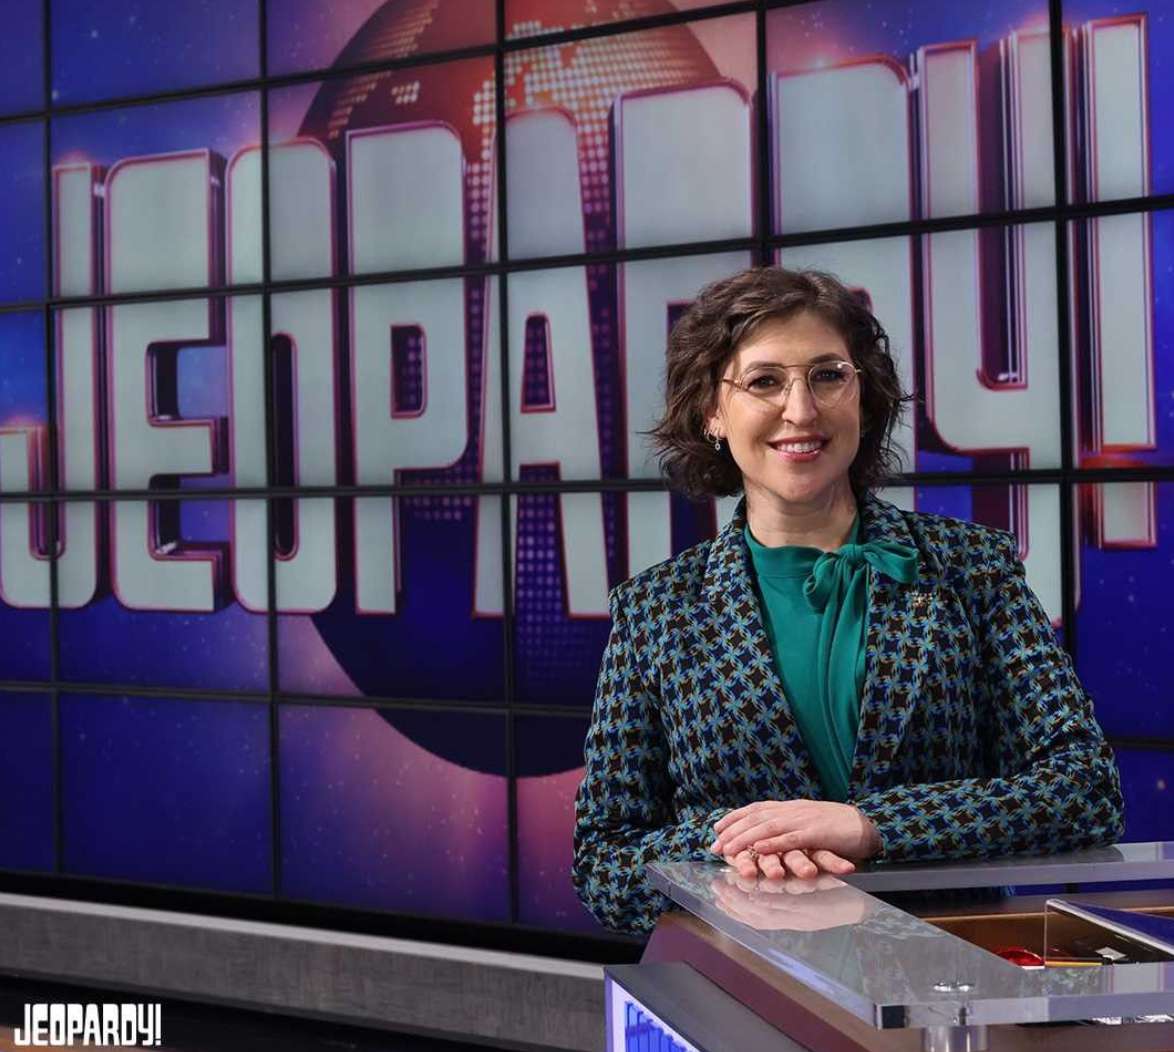 Mayim Bialik hosting Jeopardy